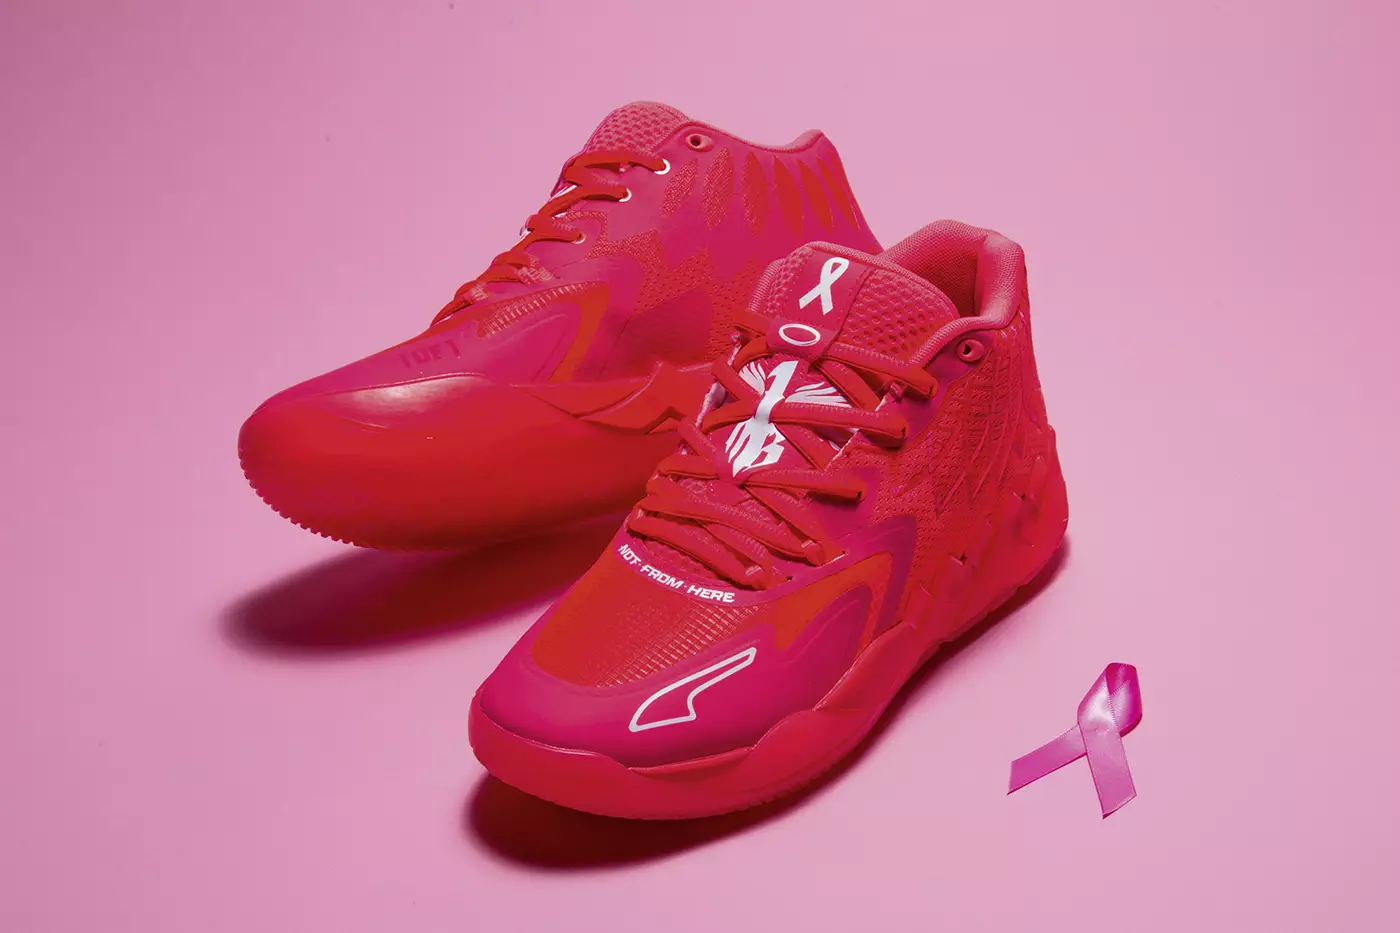 PUMA Hoops s'associe à la star de la NBA LaMelo Ball pour l'élégante chaussure MB.01 BCA, un pas en avant dans la sensibilisation au cancer du sein